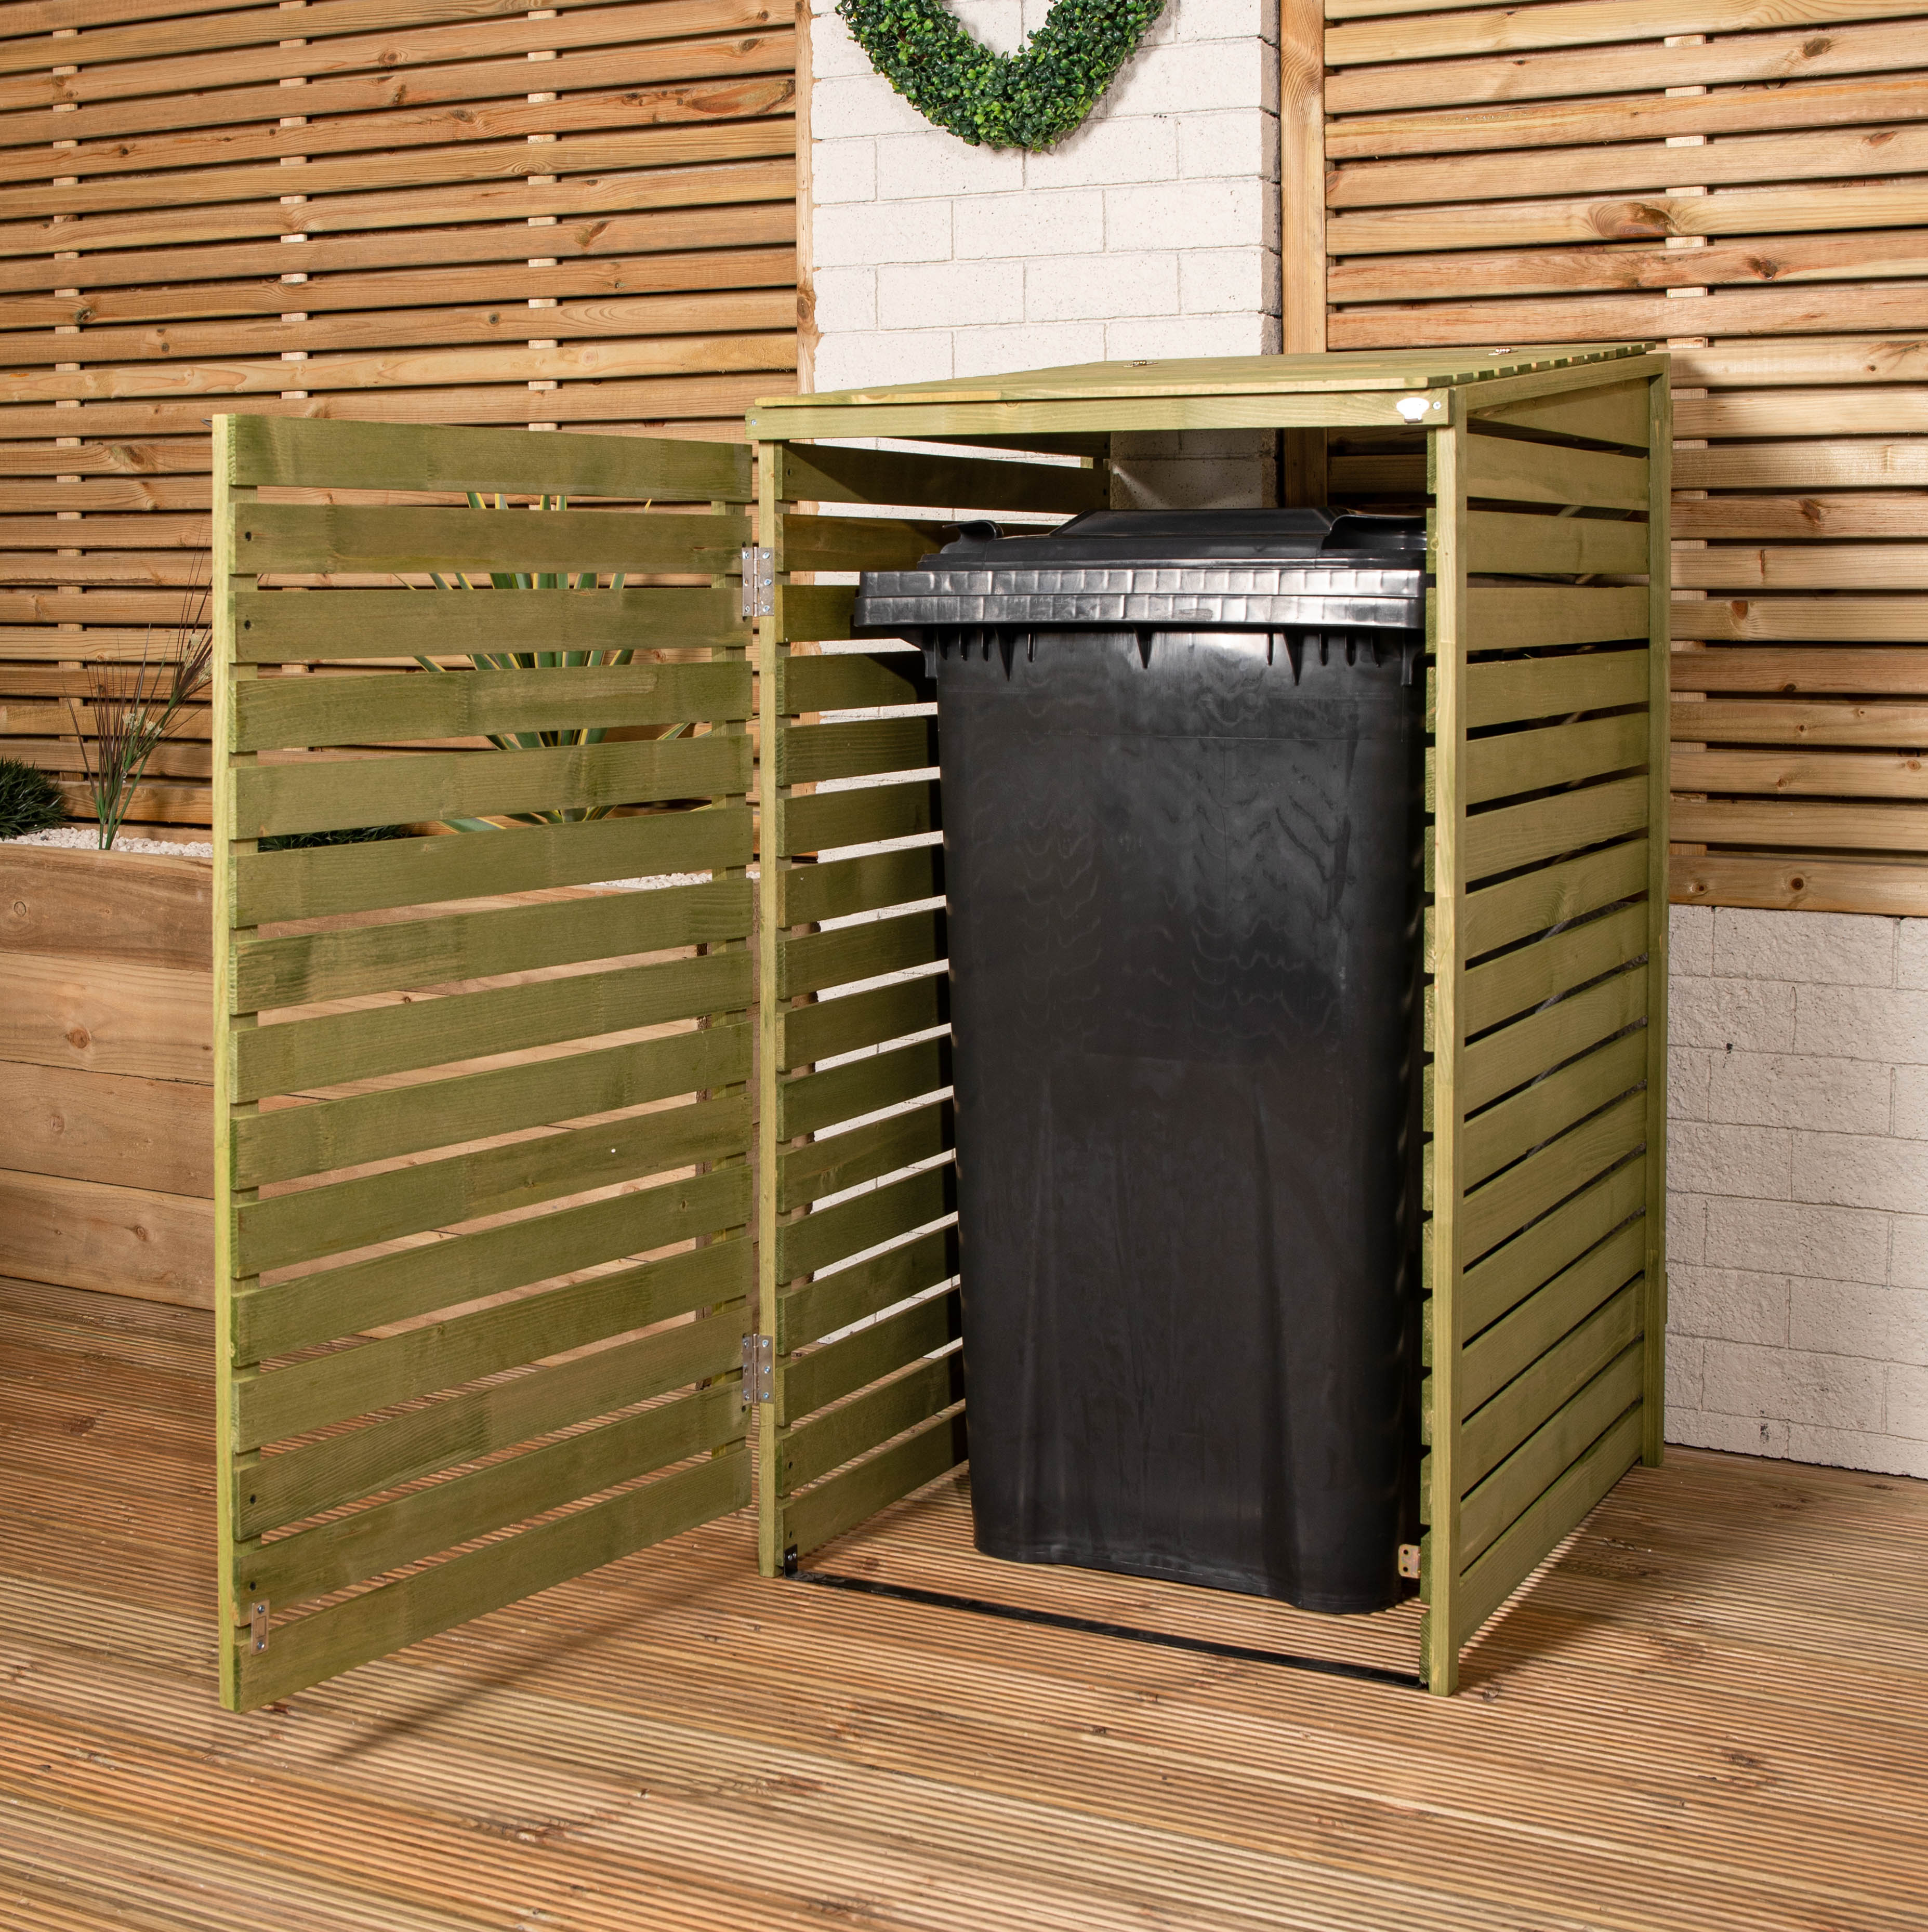 68cm x 1.2m Wooden Outdoor Garden Single Wheelie Bin Store Storage